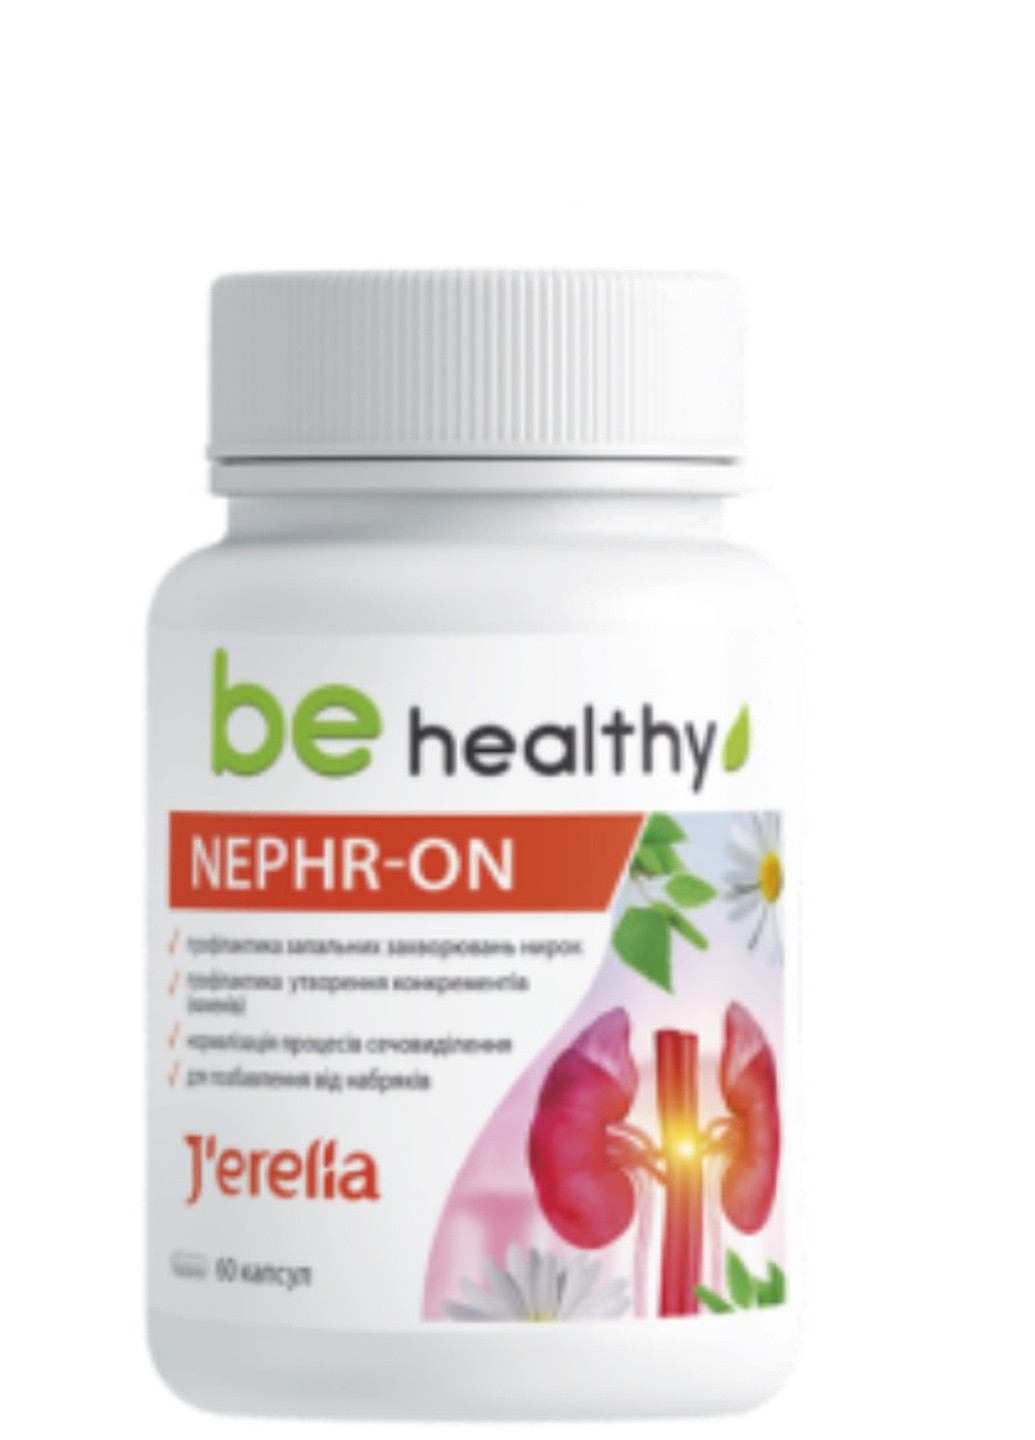 NEPHR-ON. Фітокомплекс для профілактики запальних захворювань нирок і сечовідних шляхів. J'erelia (257898307)